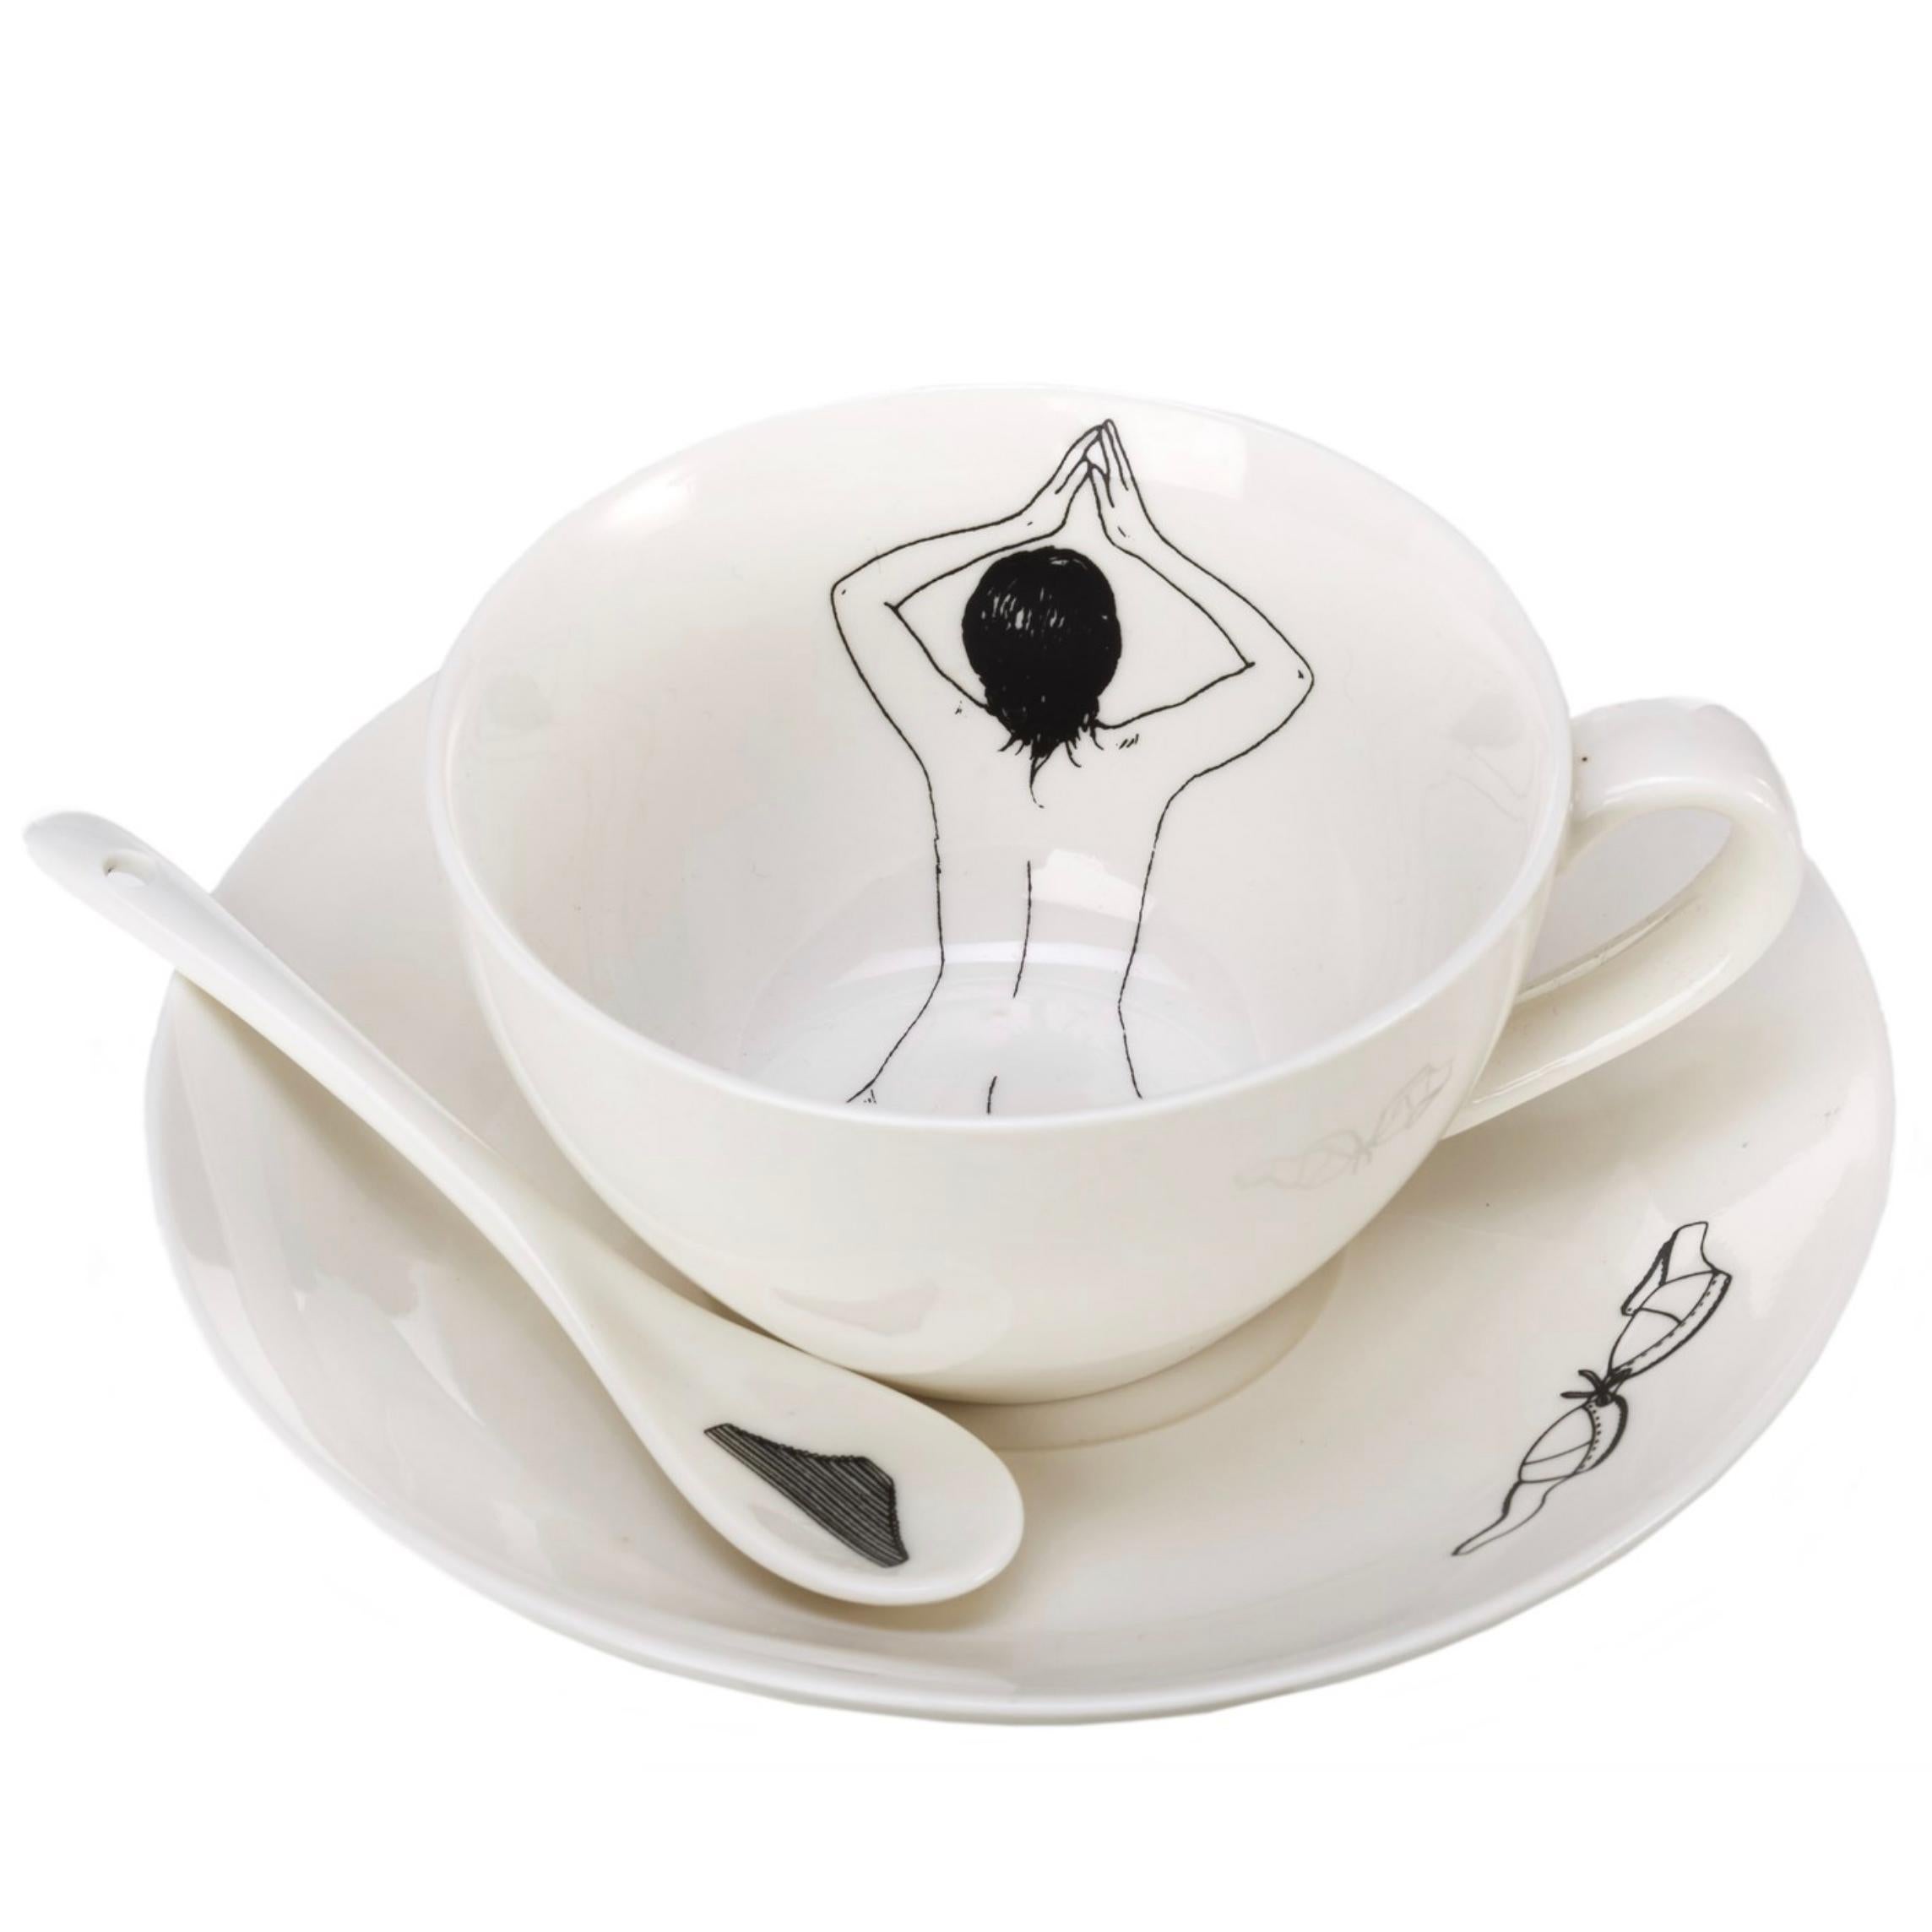 Le service à thé déshabillé a été conçu et fabriqué à la main aux Pays-Bas par Esther Hörchner. Chaque tasse présente une illustration au trait d'une femme nue dans différentes positions, comme si elle se baignait dans le thé ou le café. L'ensemble